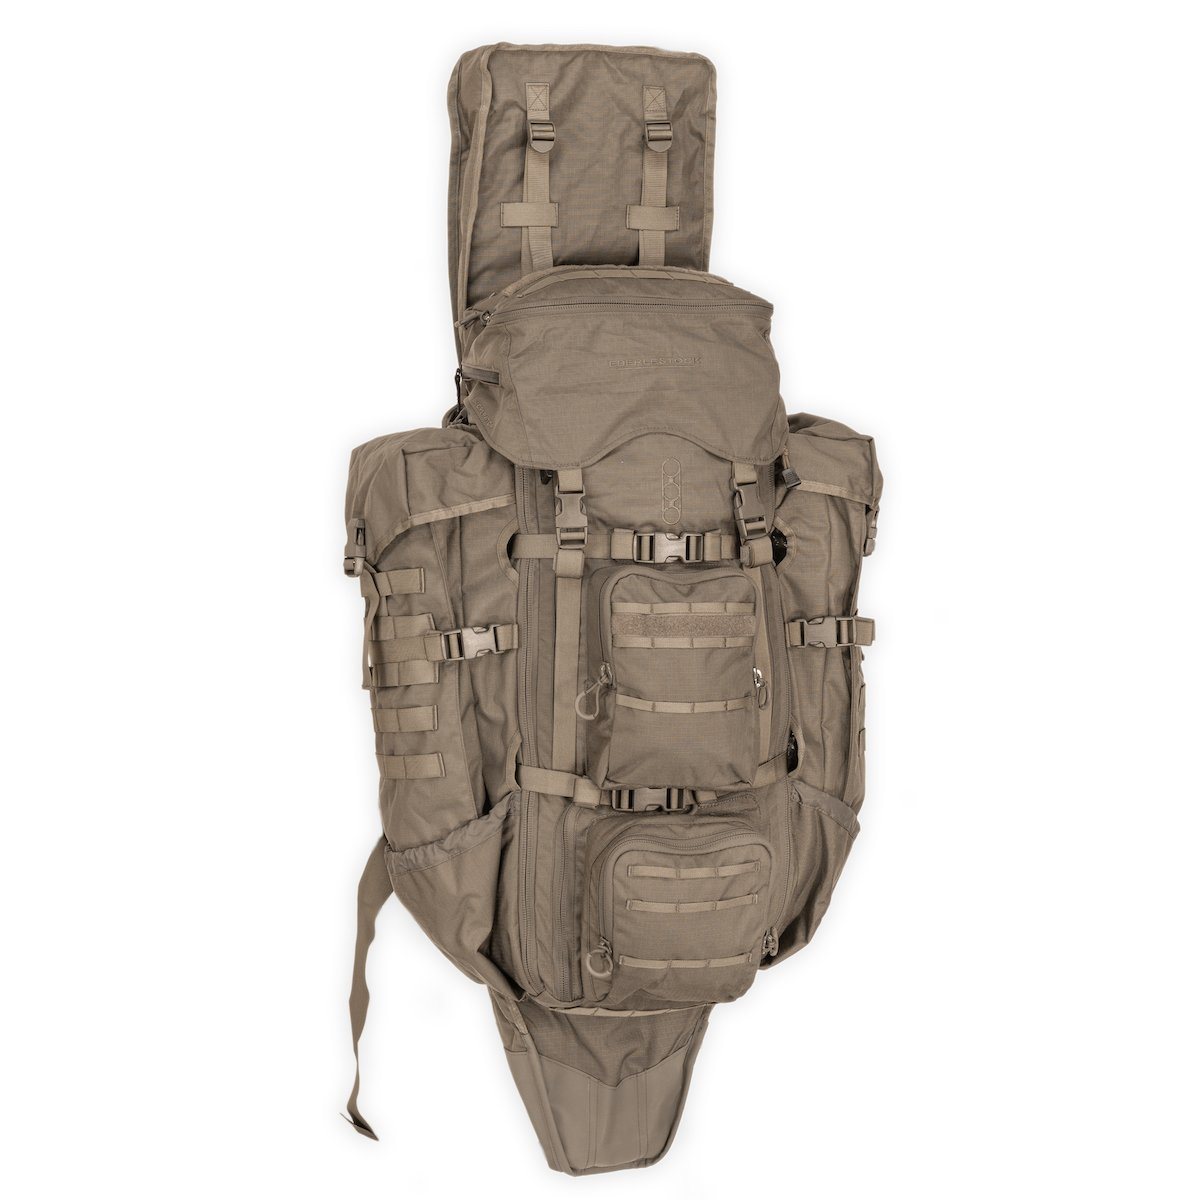 Backpack EBERLESTOCK sniper G4 OPERATOR DRY EARTH | MILITARY RANGE